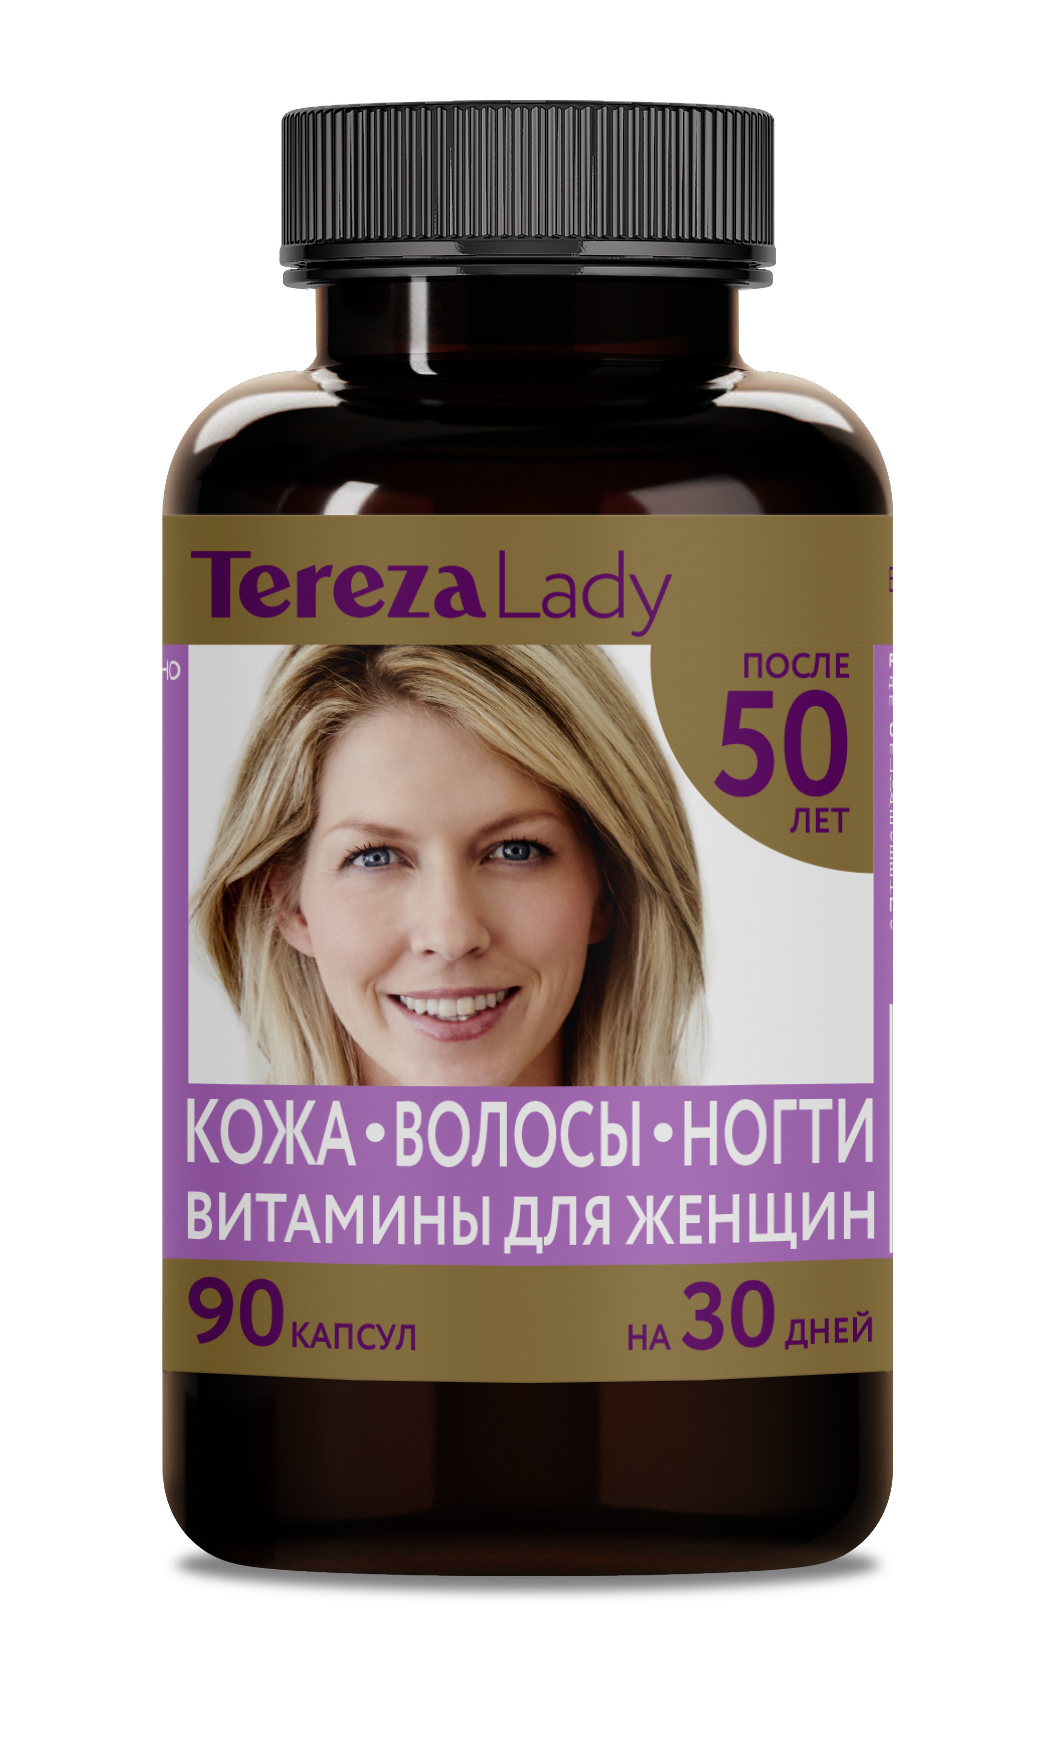 Витамины для женщин 50+ лет комплекс Кожа Волосы Ногти TerezaLady, 90 капсул